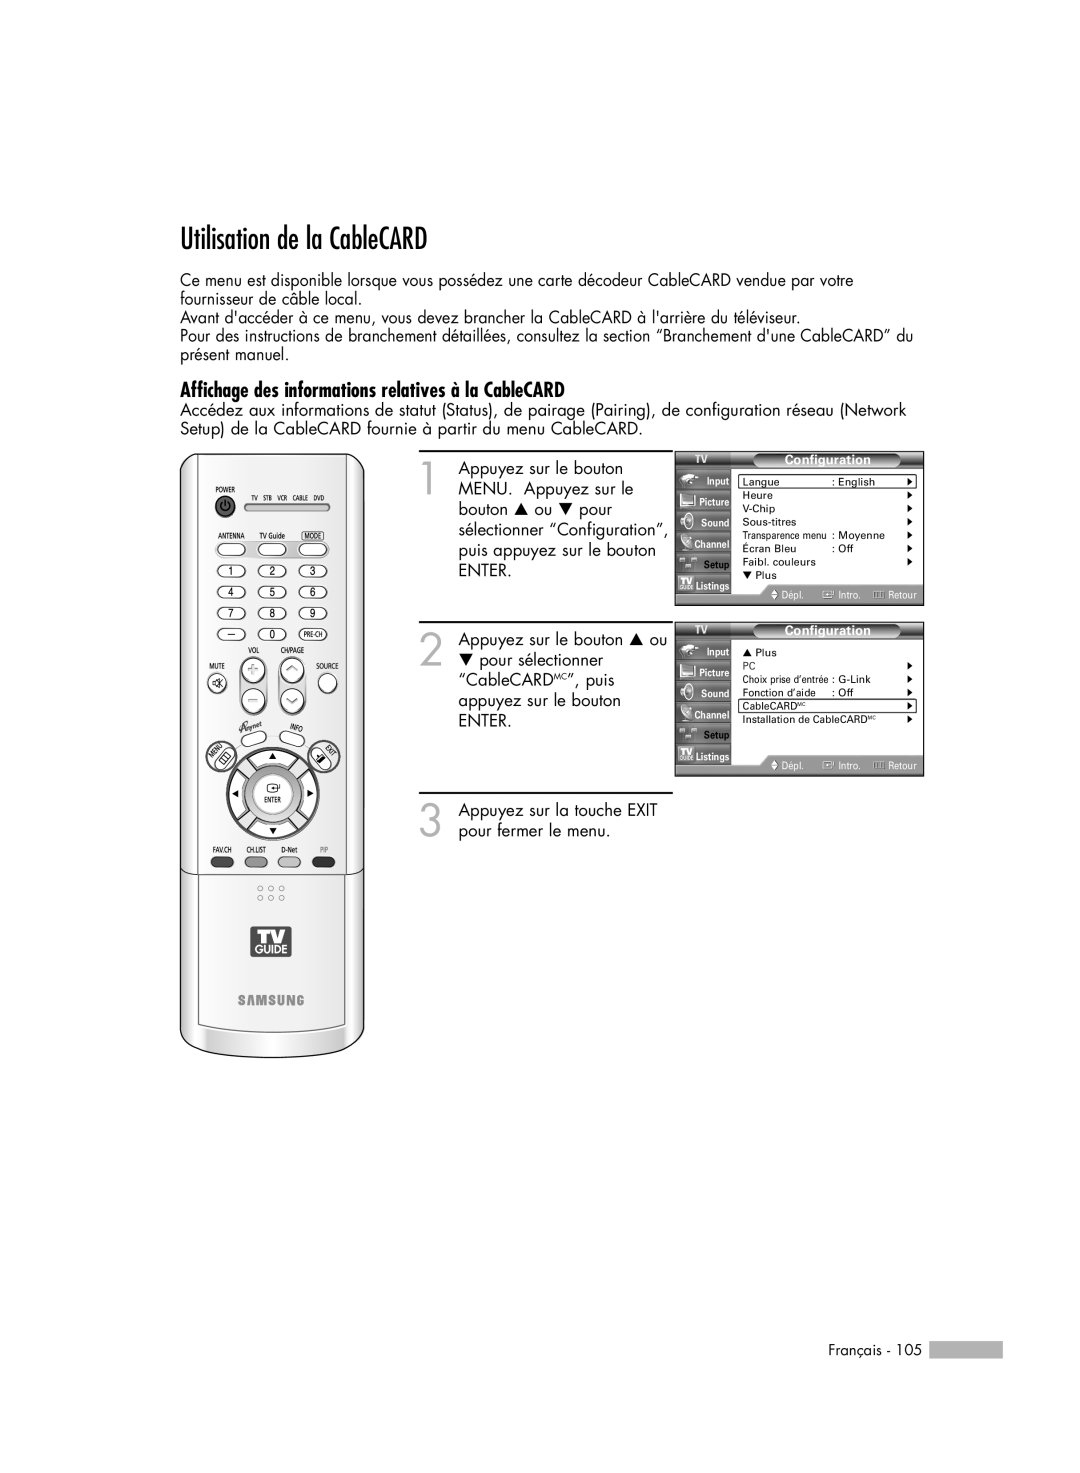 Samsung HL-R5078W, HL-R6178W, HL-R5678W Utilisation de la CableCARD, Affichage des informations relatives à la CableCARD 